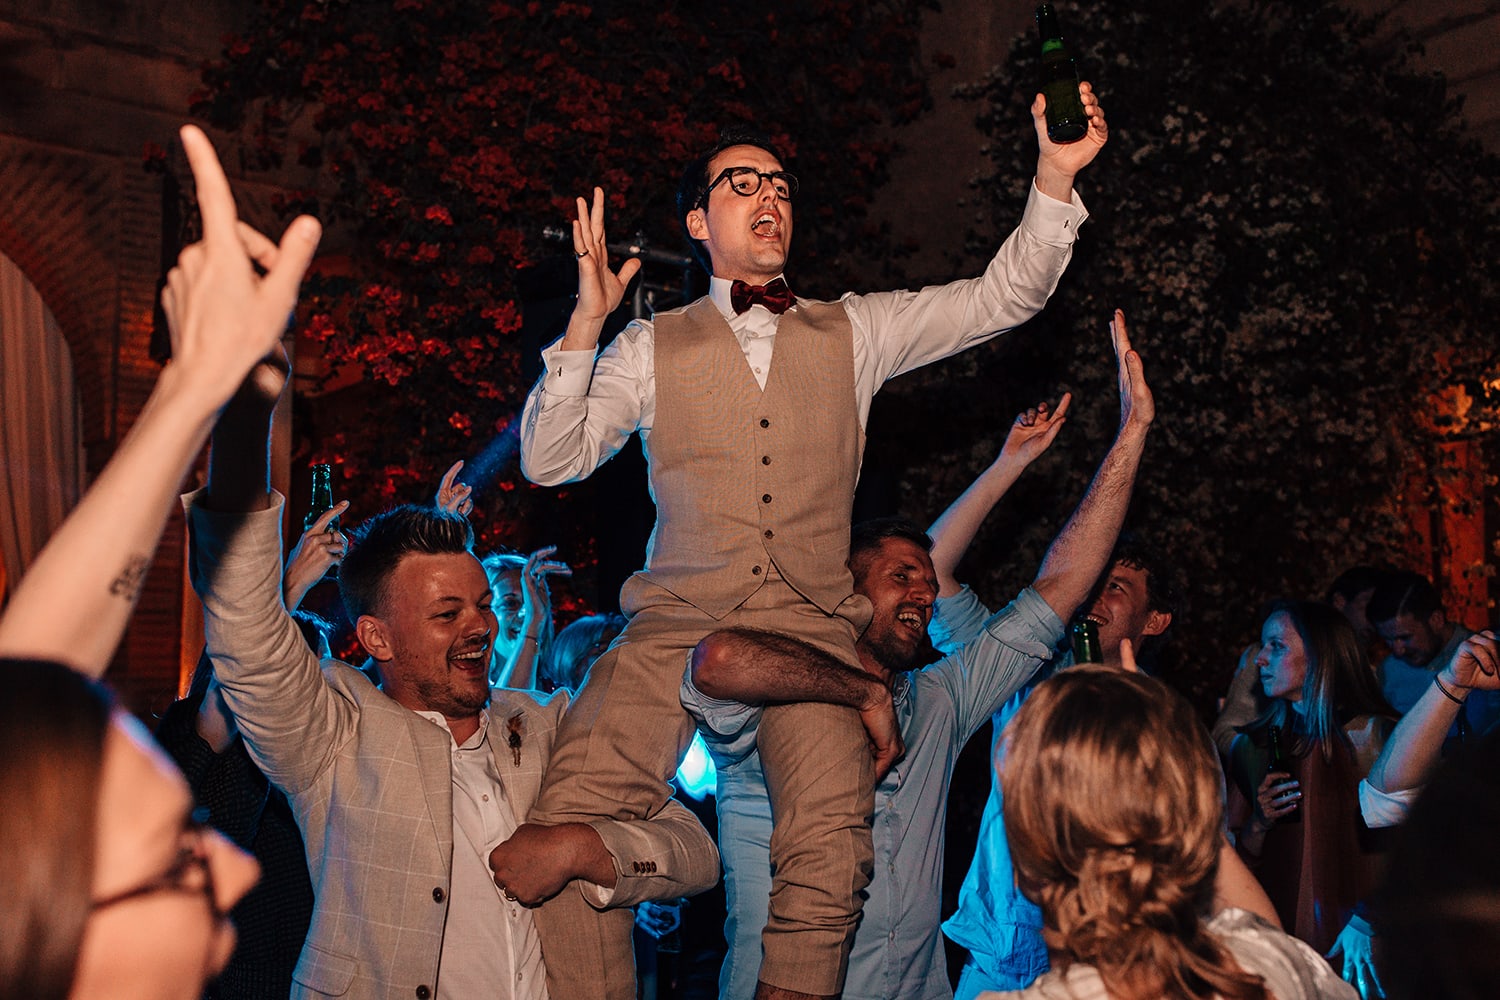 Groom on his guests shoulders on the wedding dance-floor